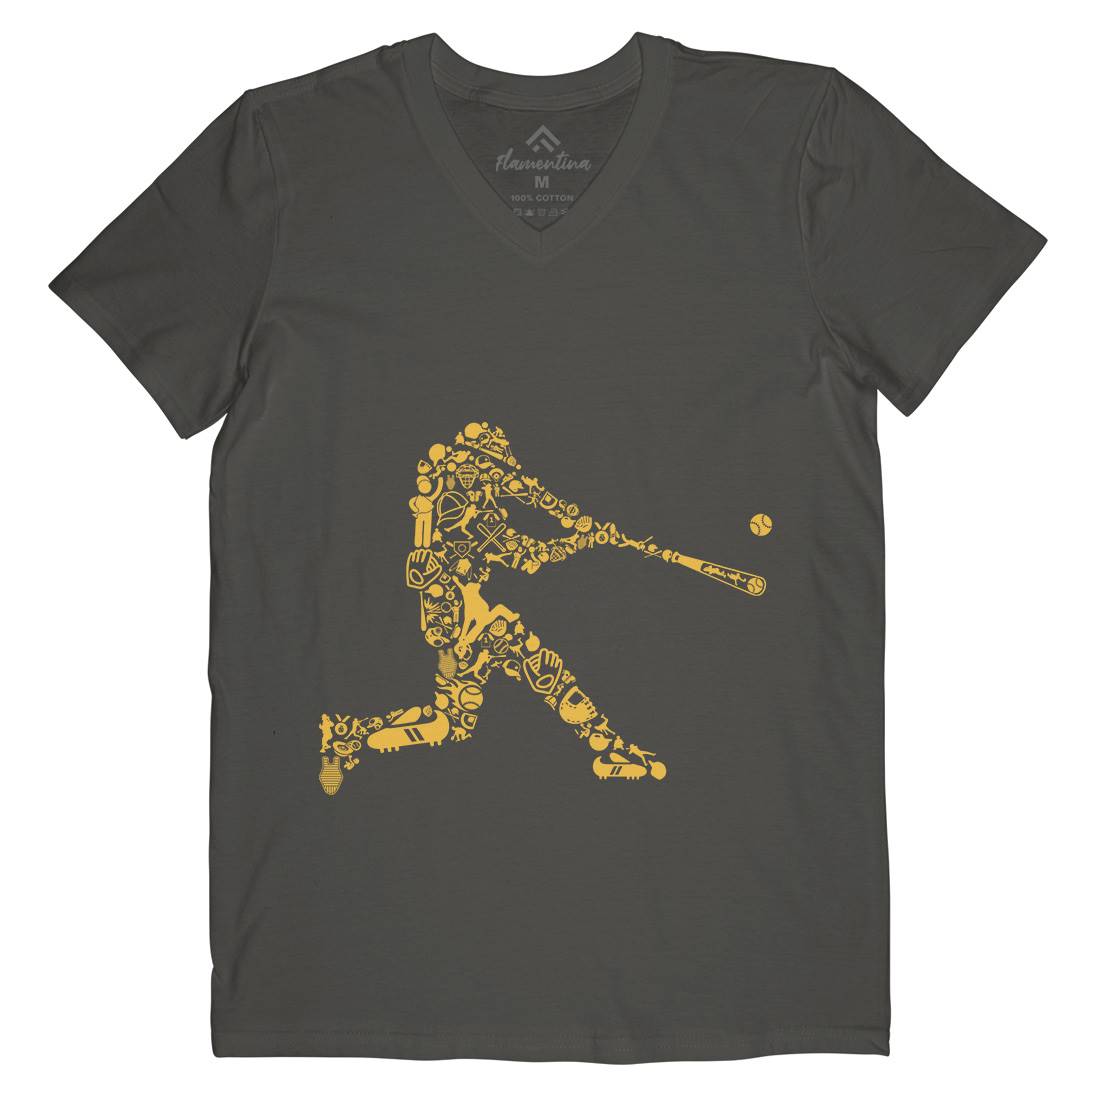 Baseball Player Mens V-Neck T-Shirt Sport B007